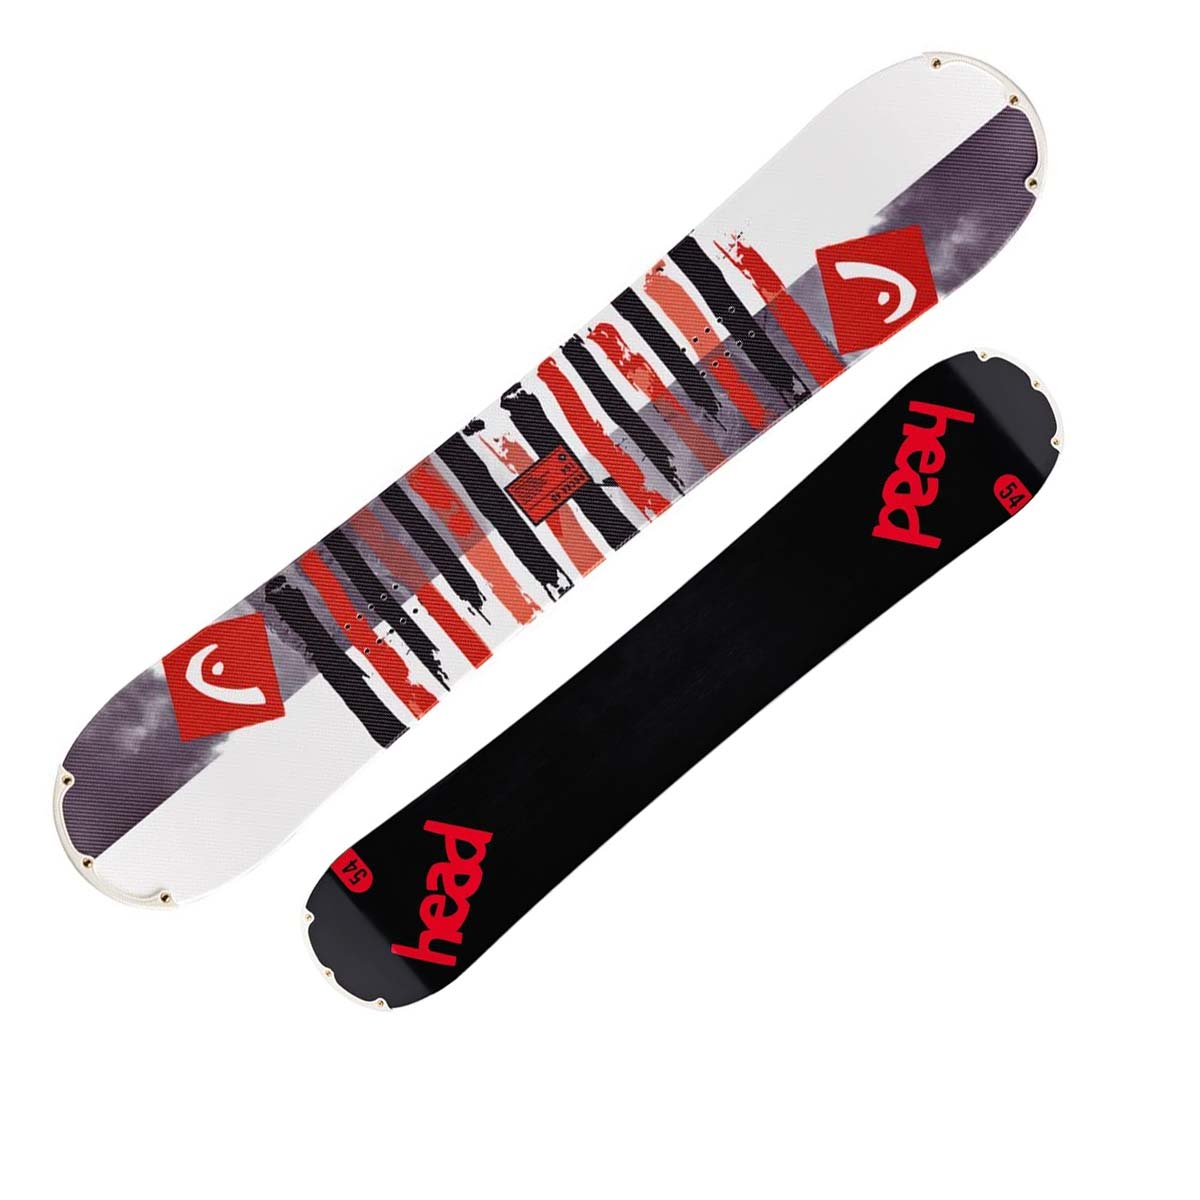  Tavola Snowboard Head Rocka 4d + Speed Disc (Colore: nero rosso, Taglia: 154) 